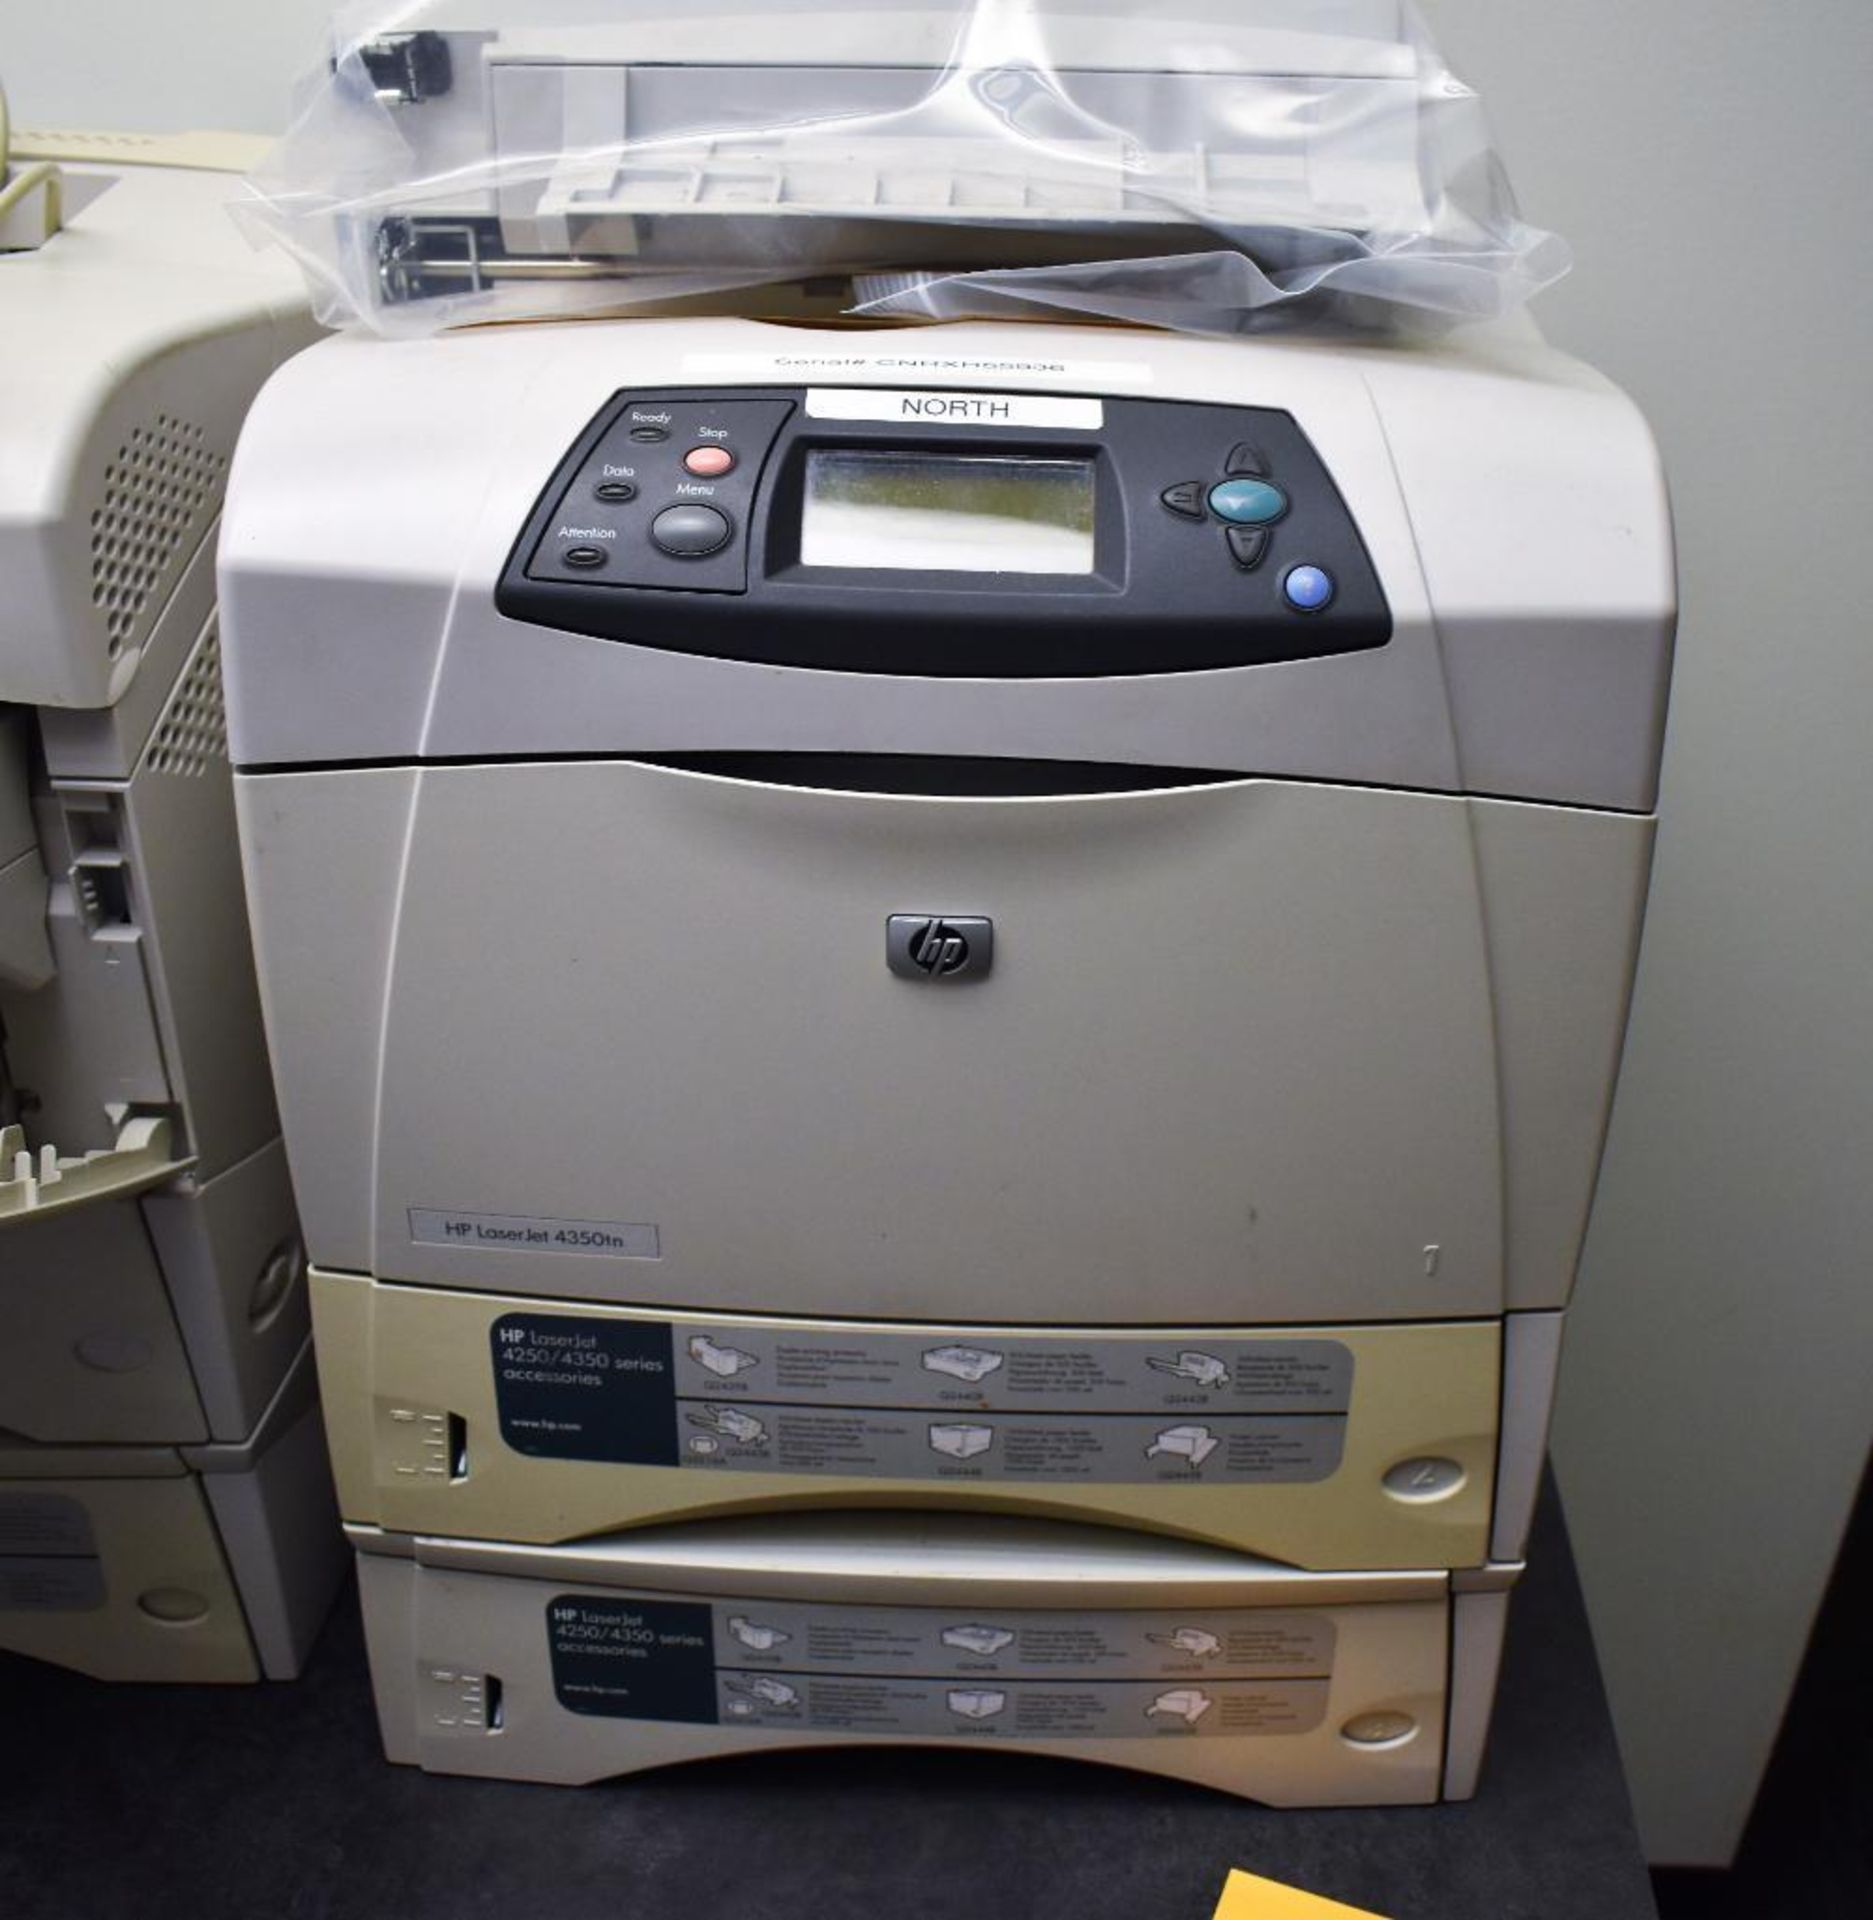 (4) HP LaserJet 4350tn Laser Printers